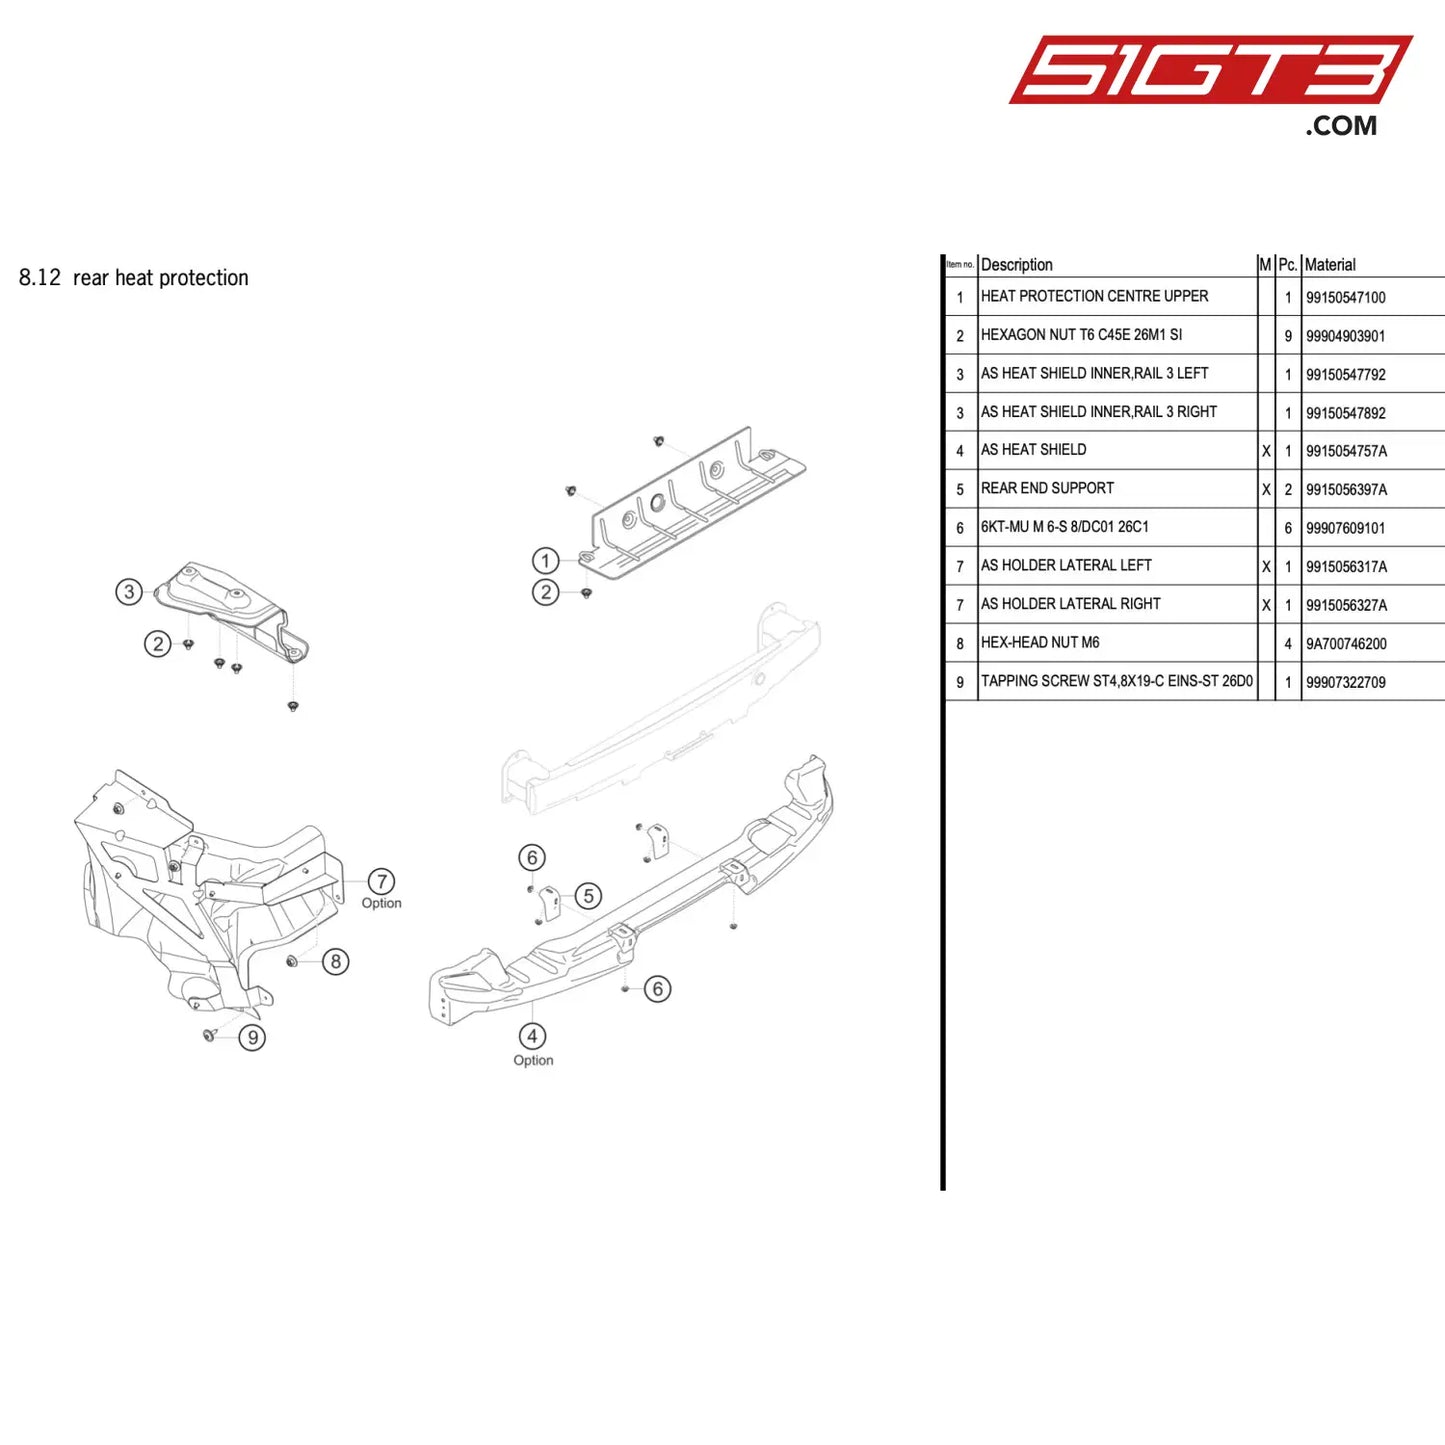 As Heat Shield Inner Rail 3 Right - 99150547892 [Porsche 911 Gt3 R Type 991 (Gen 2)] Rear Heat